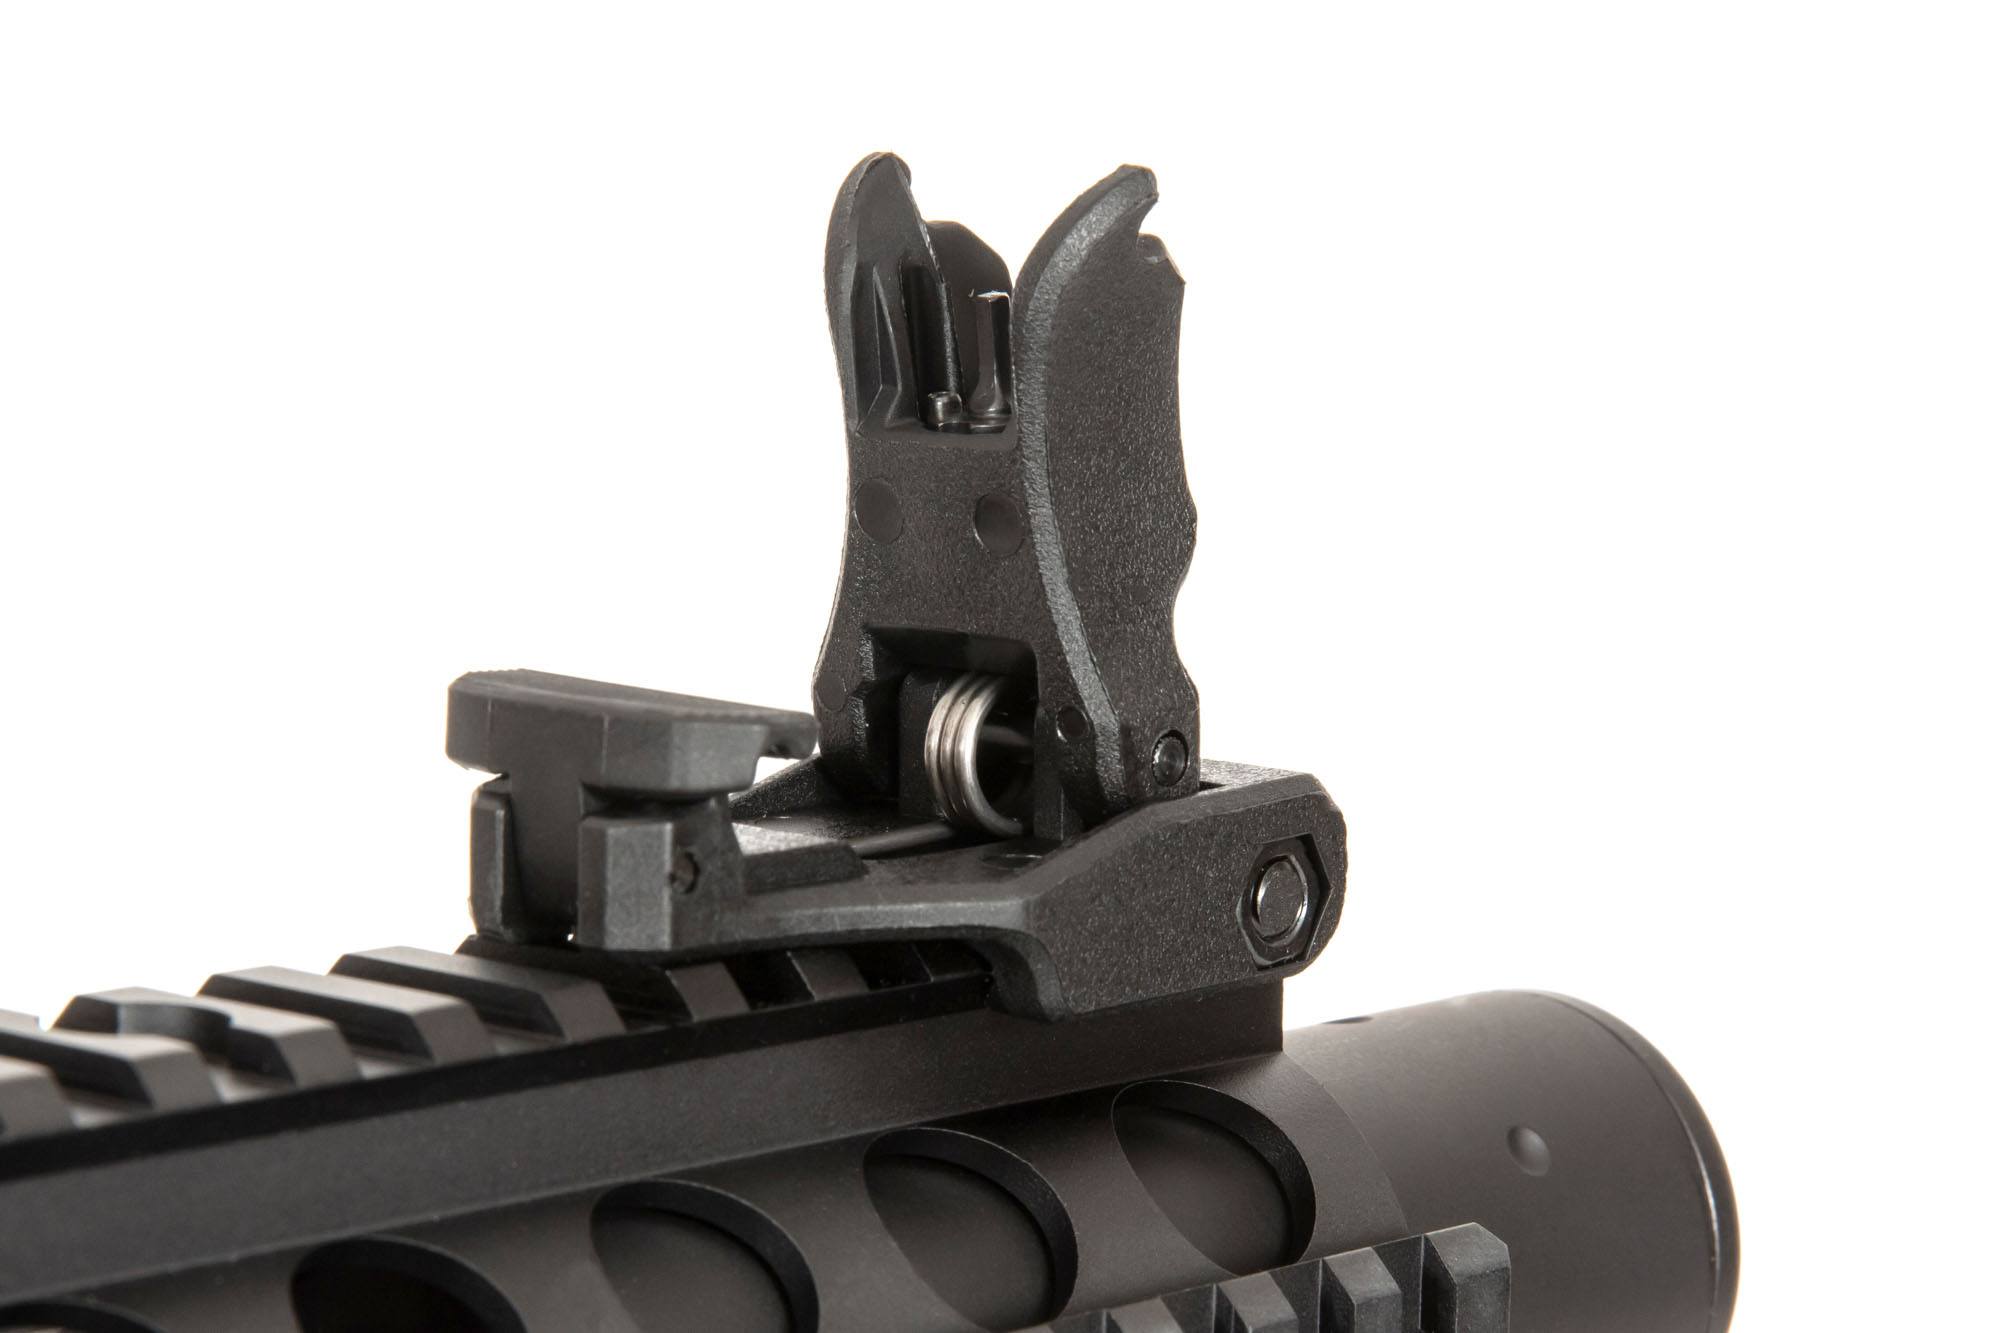 RRA SA-E05 EDGE ™ 2.0 Carbine Replica - Black by Specna Arms on Airsoft Mania Europe